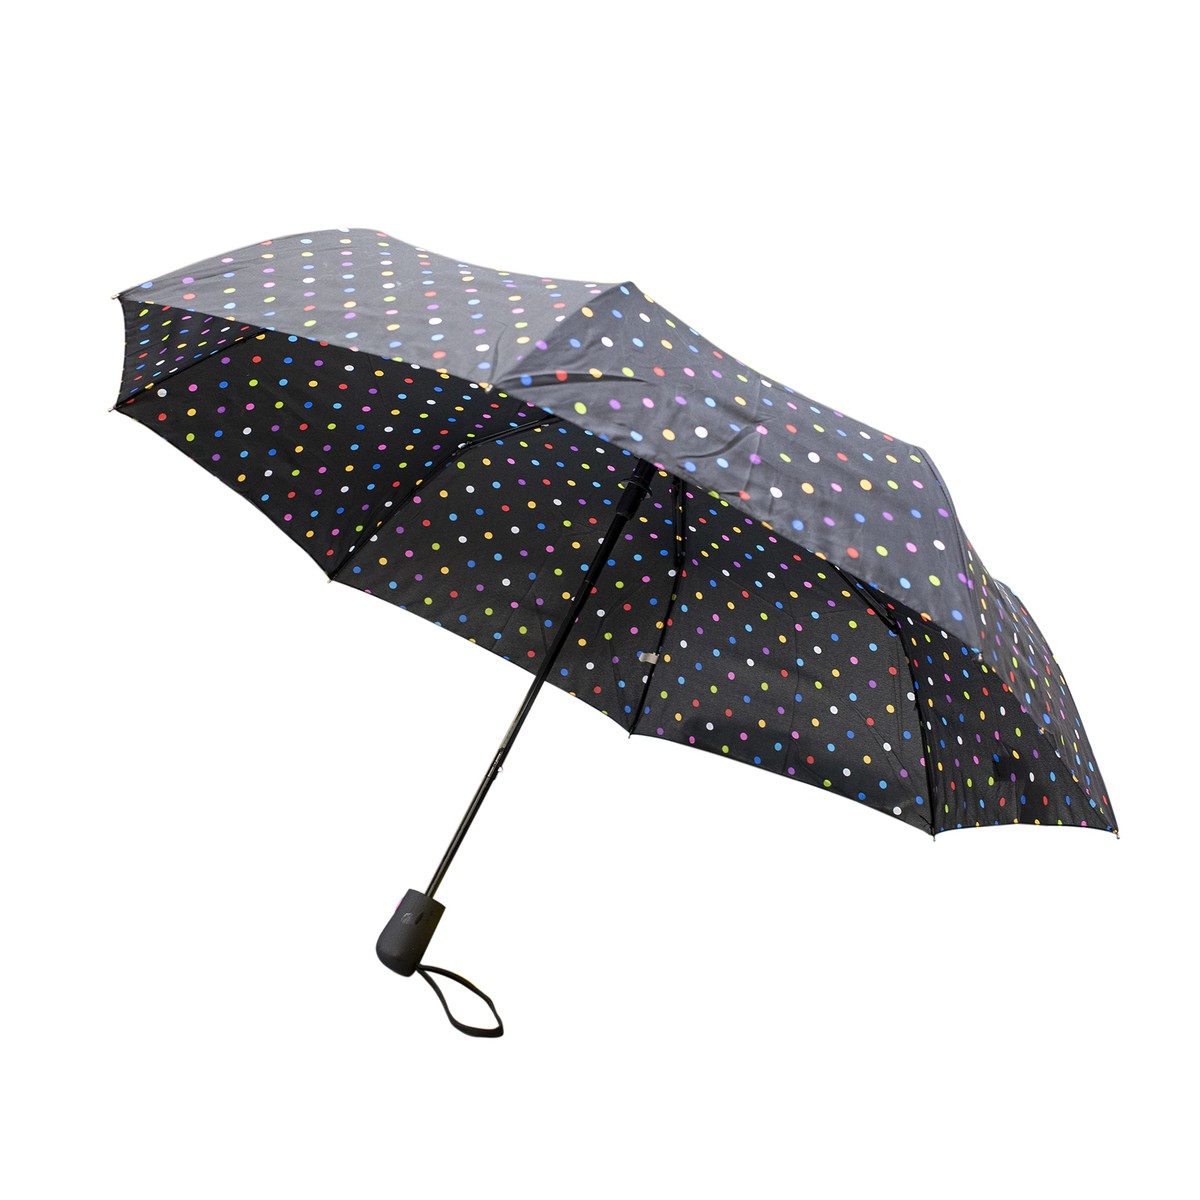   Parapluie Lorient Noir  